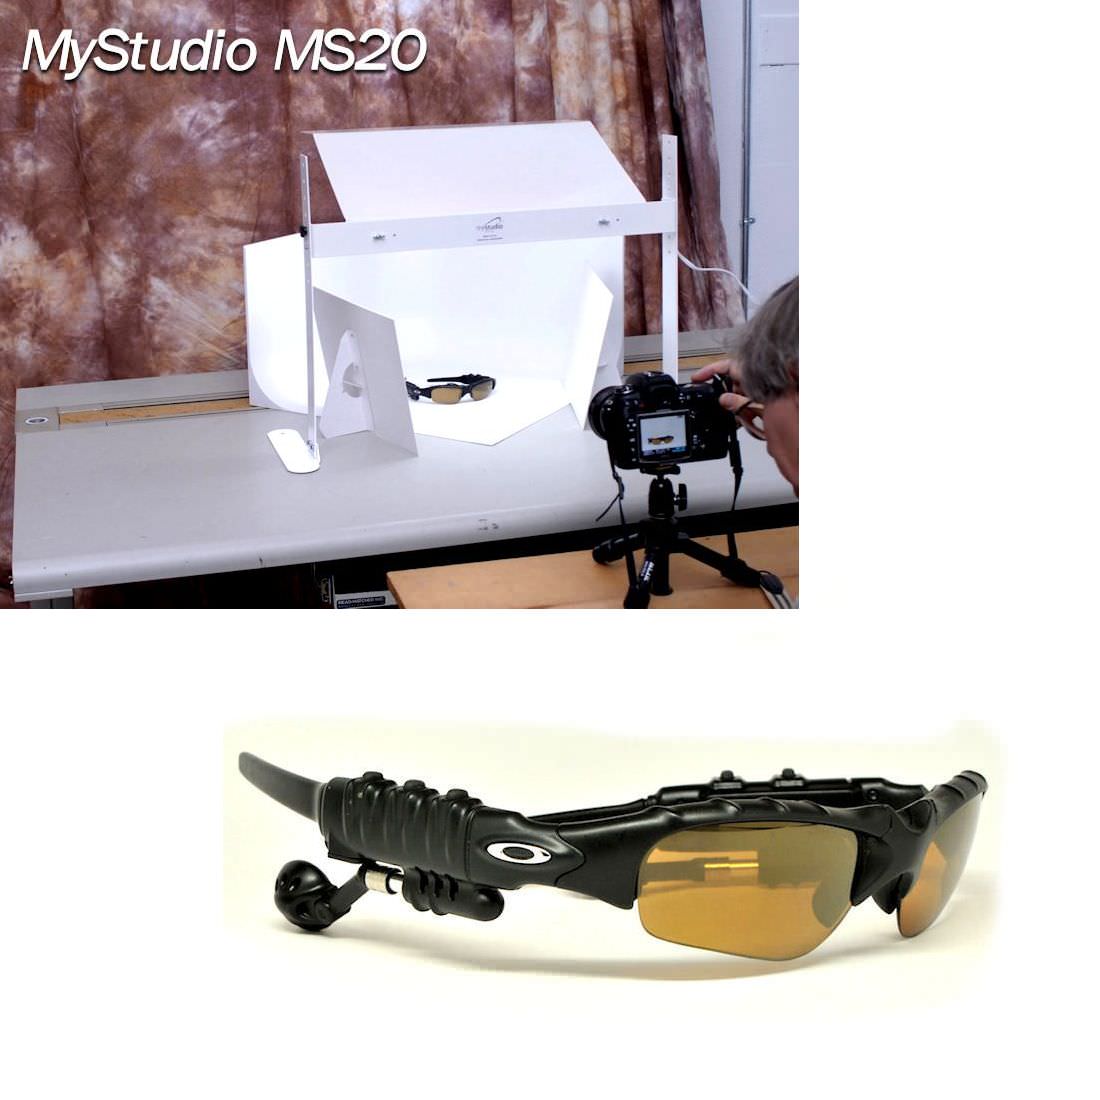 MyStudio MS20 table top photo studio 2